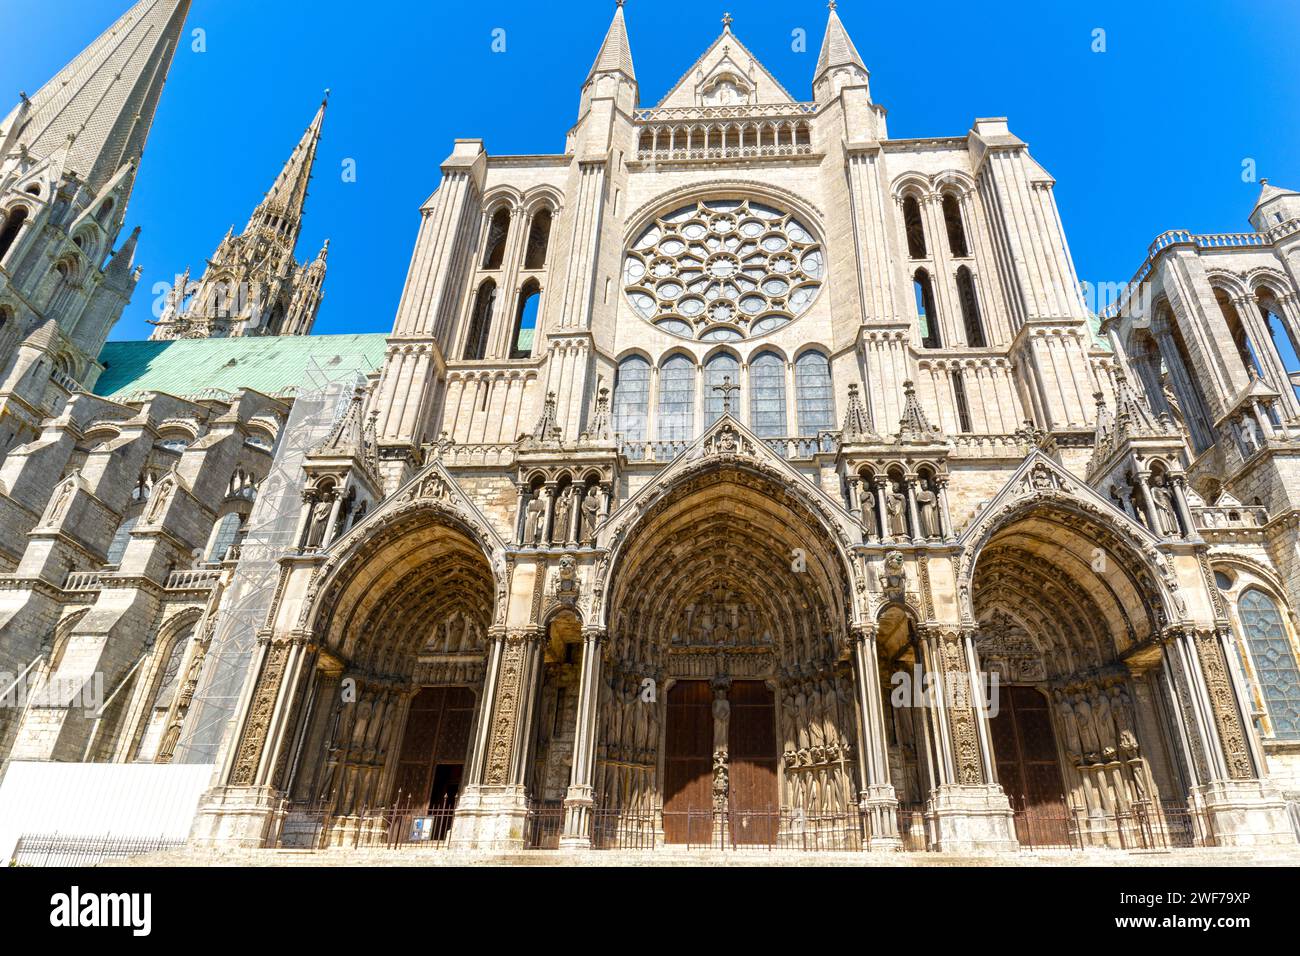 Cathédrale notre-Dame de Chartres, France, portail sud, monument de style gothique, construit entre 1194 et 1220, l'un des plus beaux et histo Banque D'Images